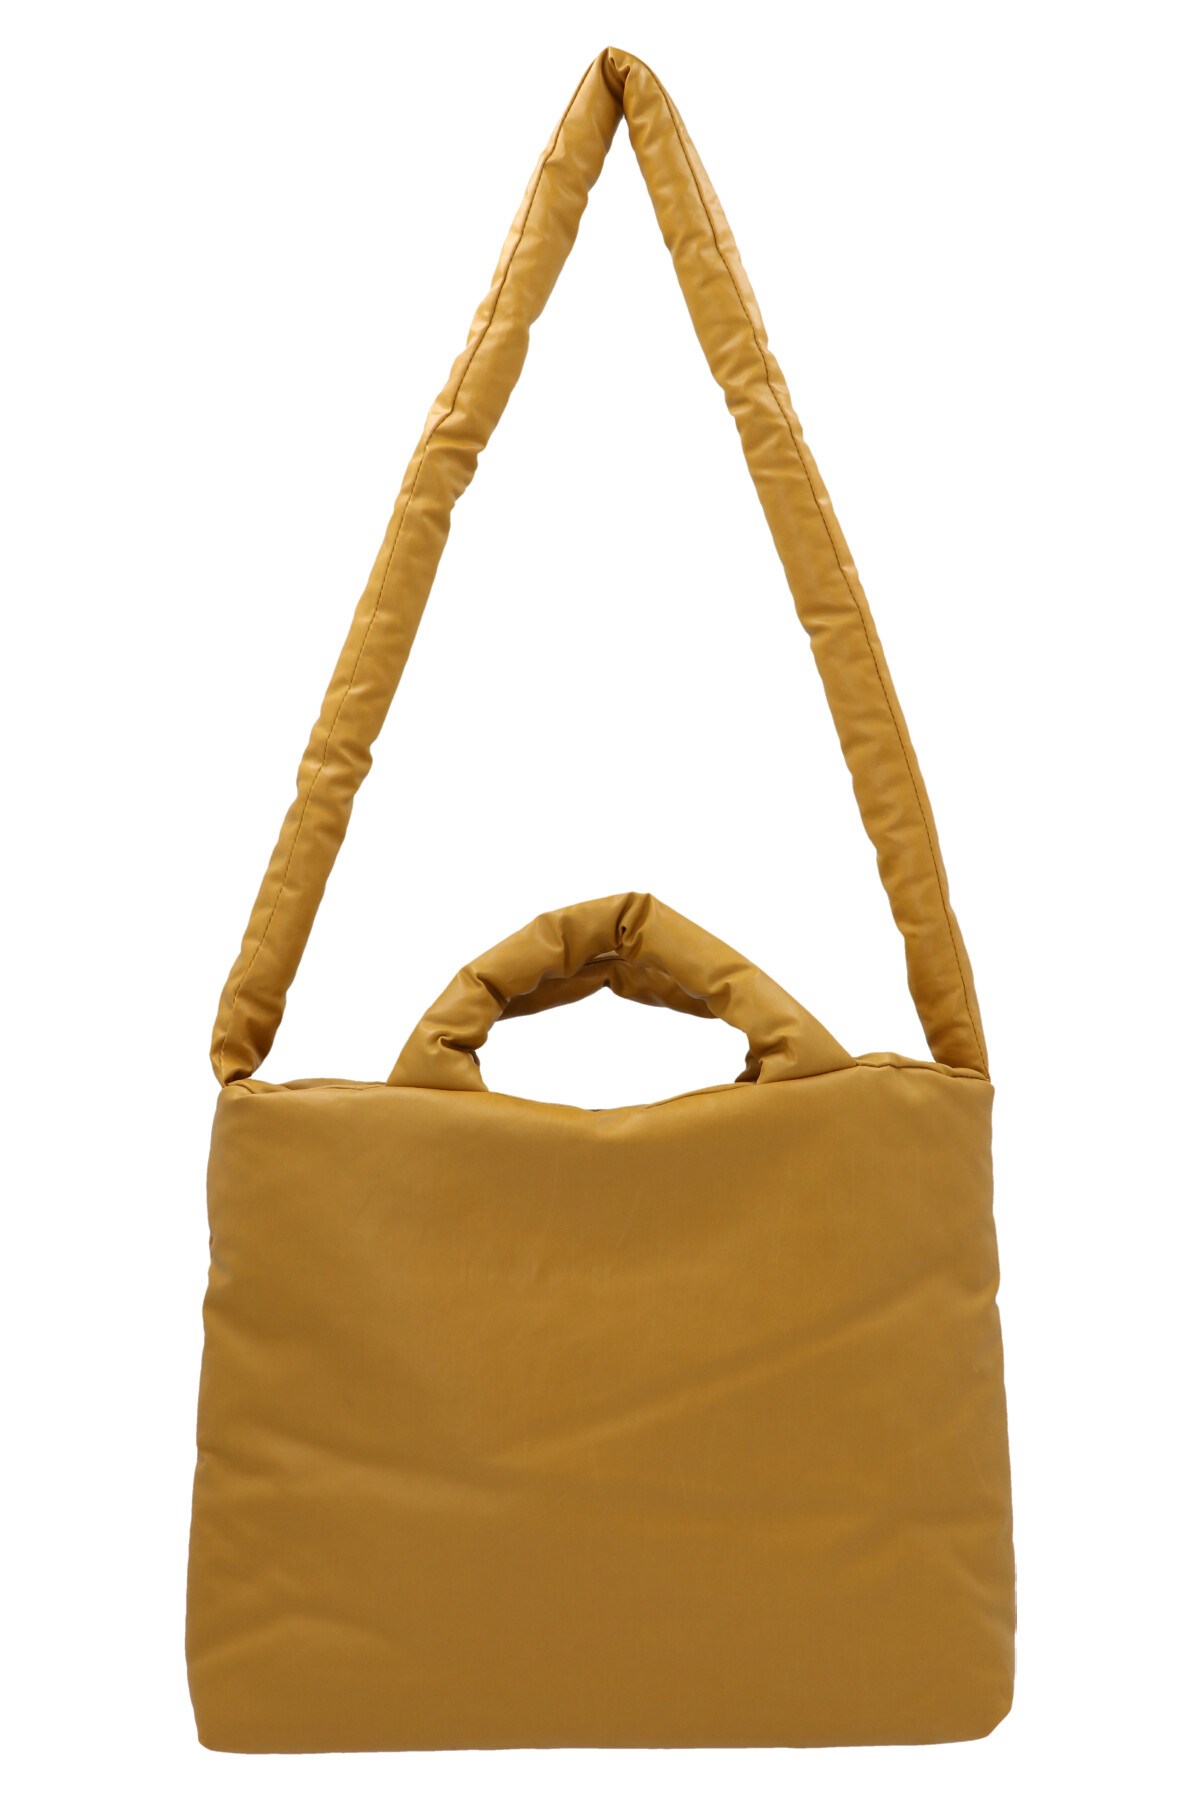 KASSL EDITIONS 'Pillow Small Oil’ Handbag